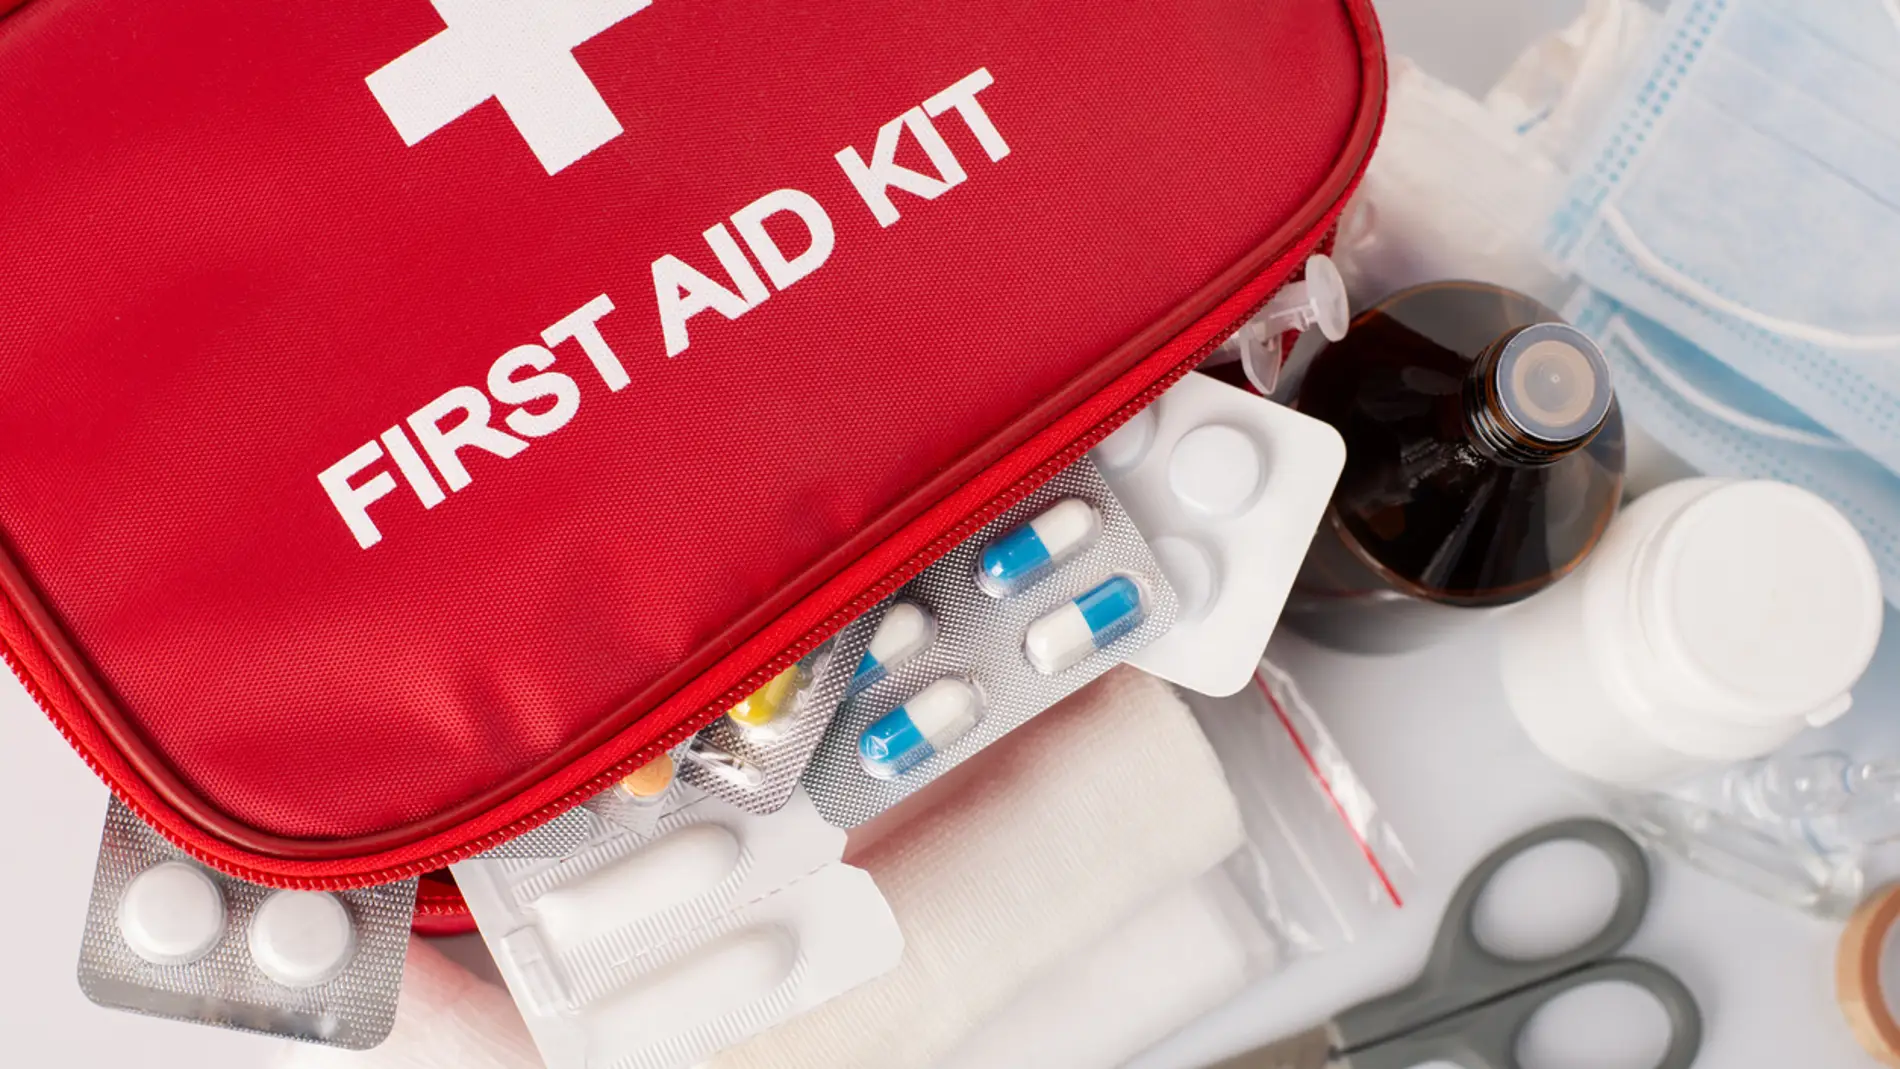 Qué debe contener un botiquín de primeros auxilios en caso de emergencia?